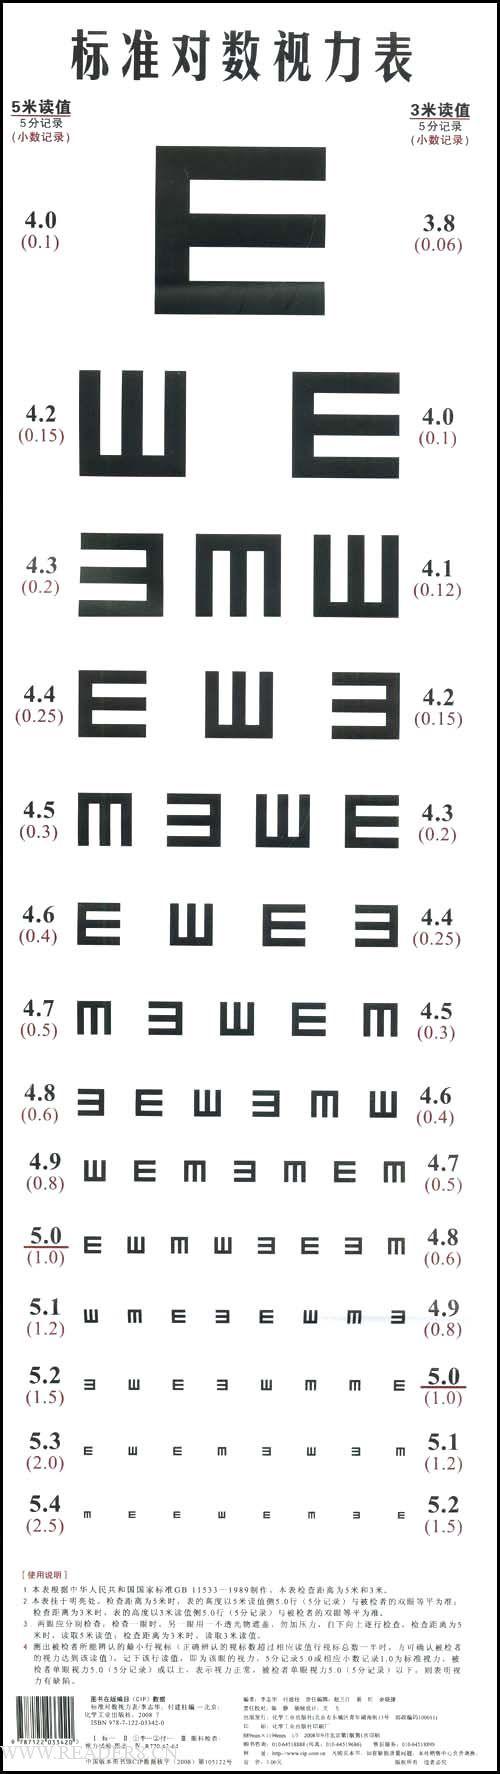 高三体检,在视力表前排队. 自己右眼近视比较严重,左眼大约4.7.